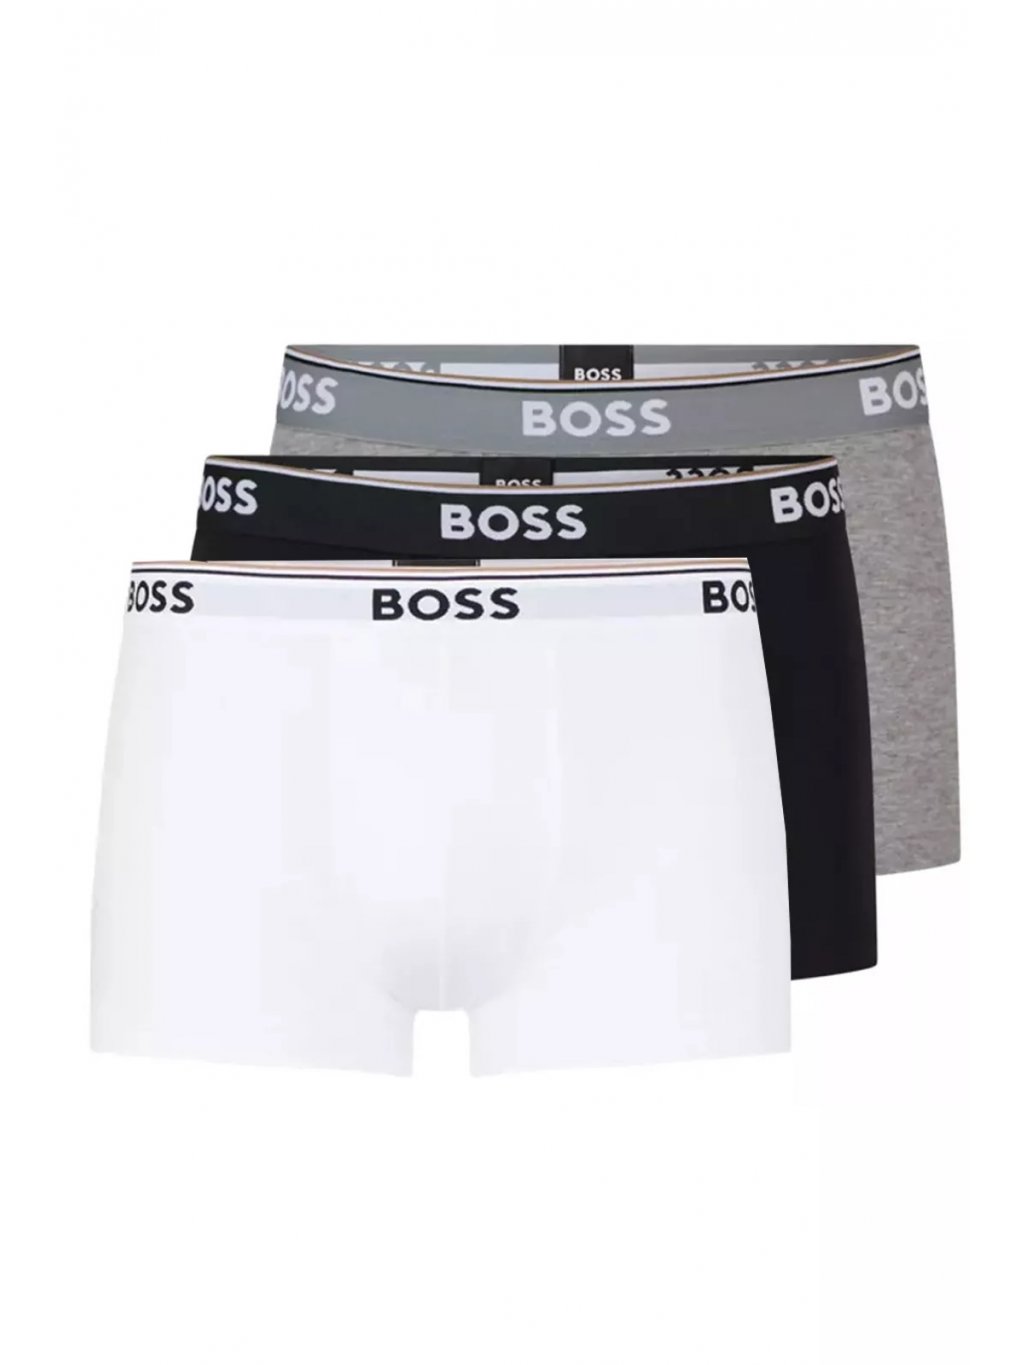 Hugo Boss pánské boxerky 3pack černé, šedé, bílé - FASHION AVENUE